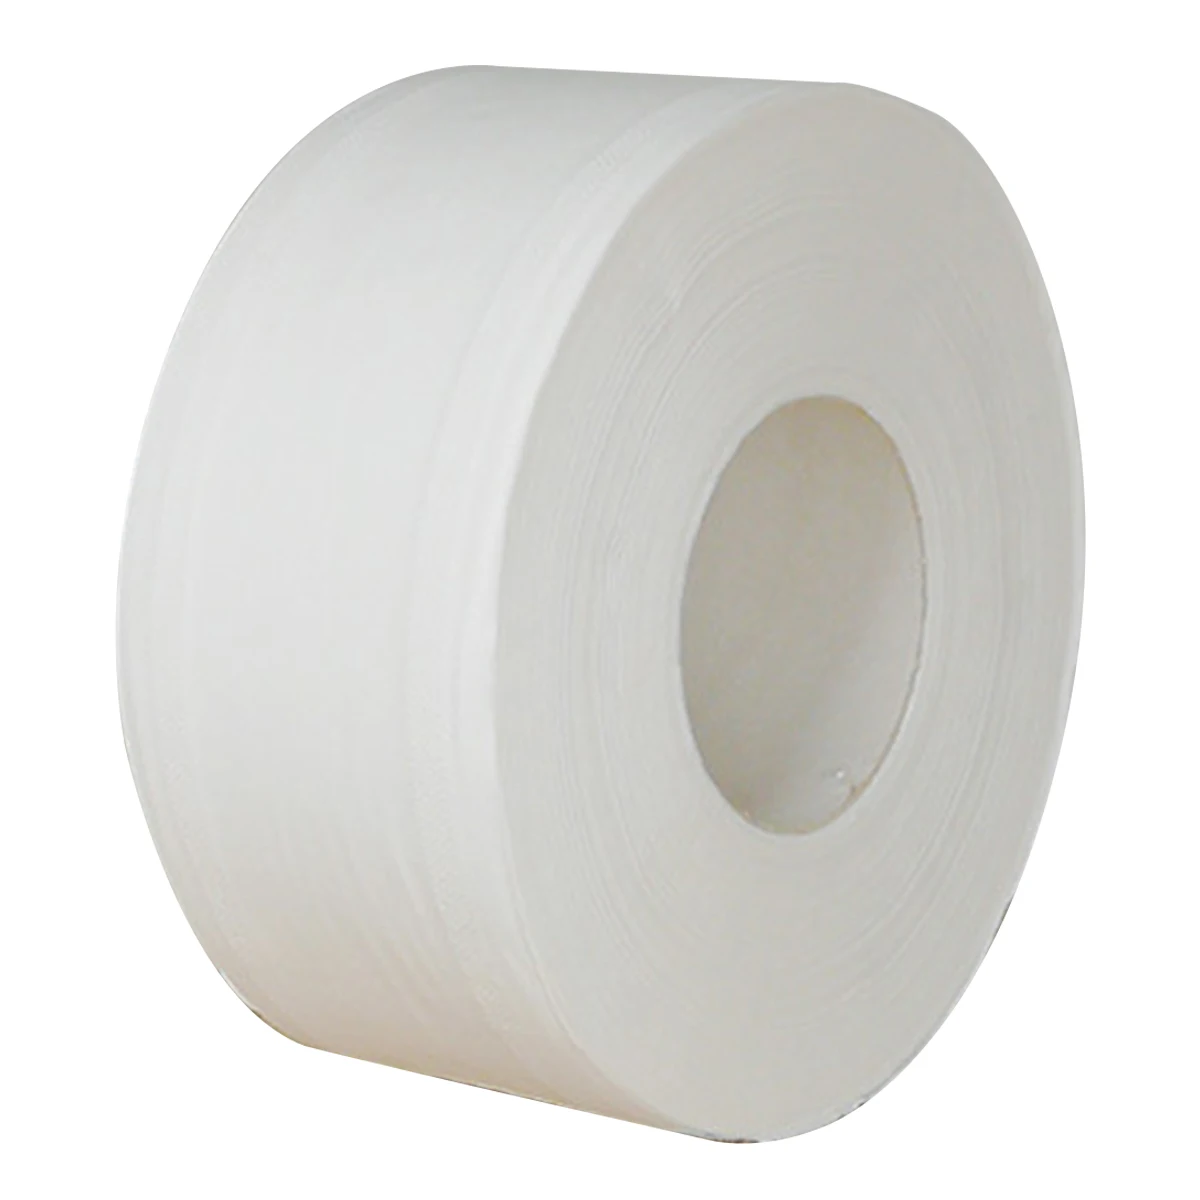 

1 рулон туалетной бумаги, 3-слойная 8,3 дюймовая туалетная бумага из древесной целлюлозы, салфетки для ванной, тисненая утолщенная рулонная бу...